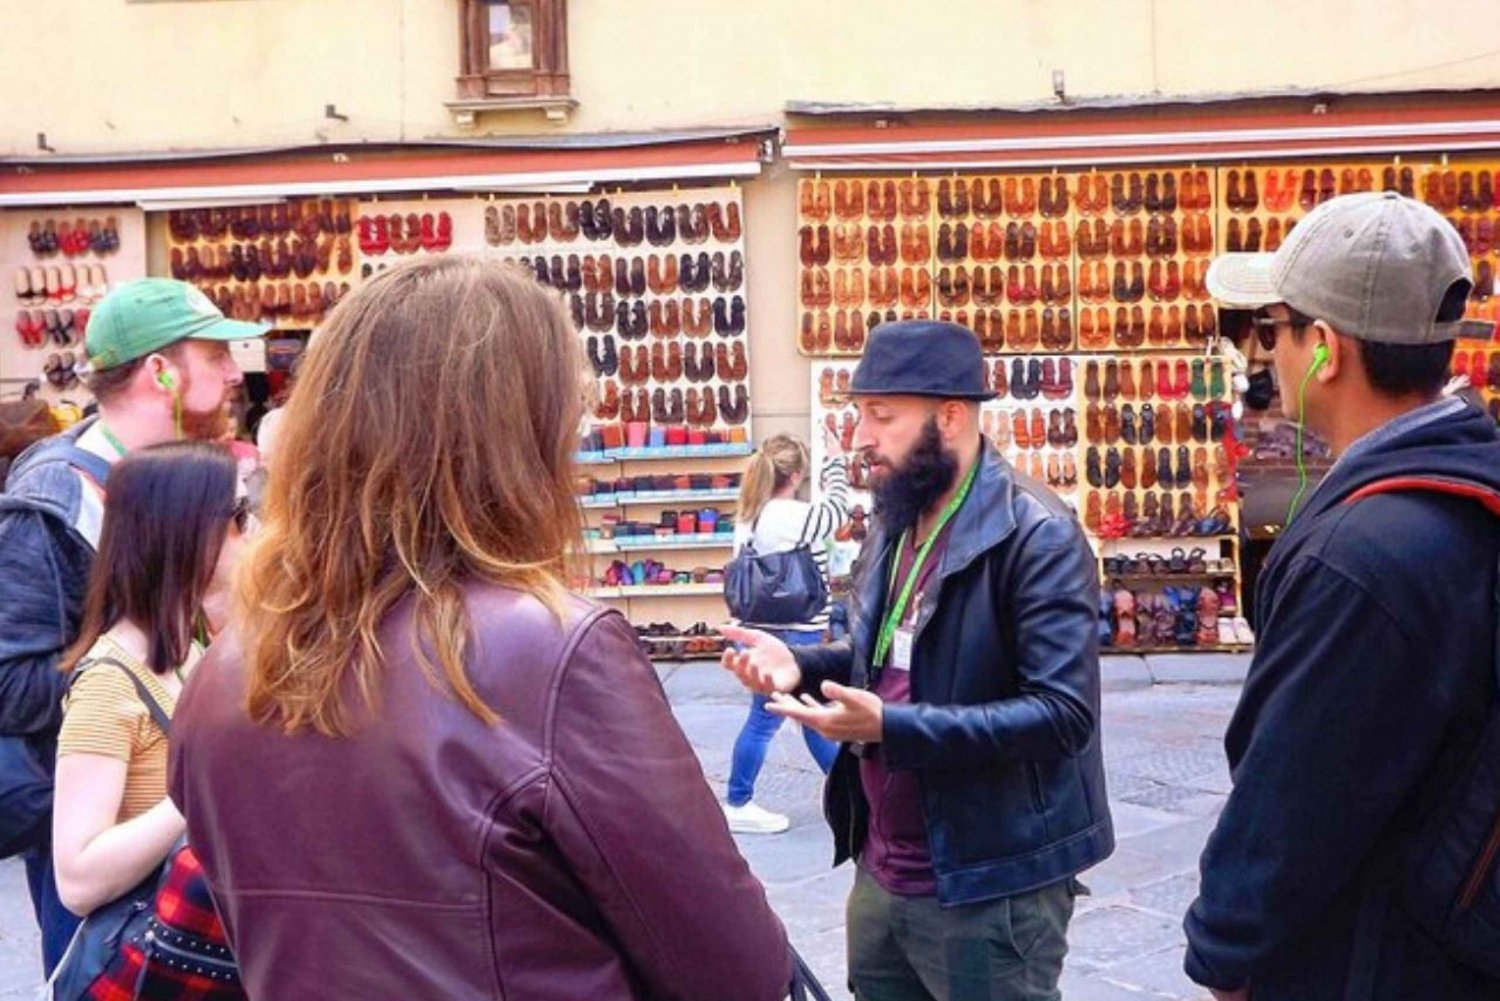 Medici Walking Tour in Florence